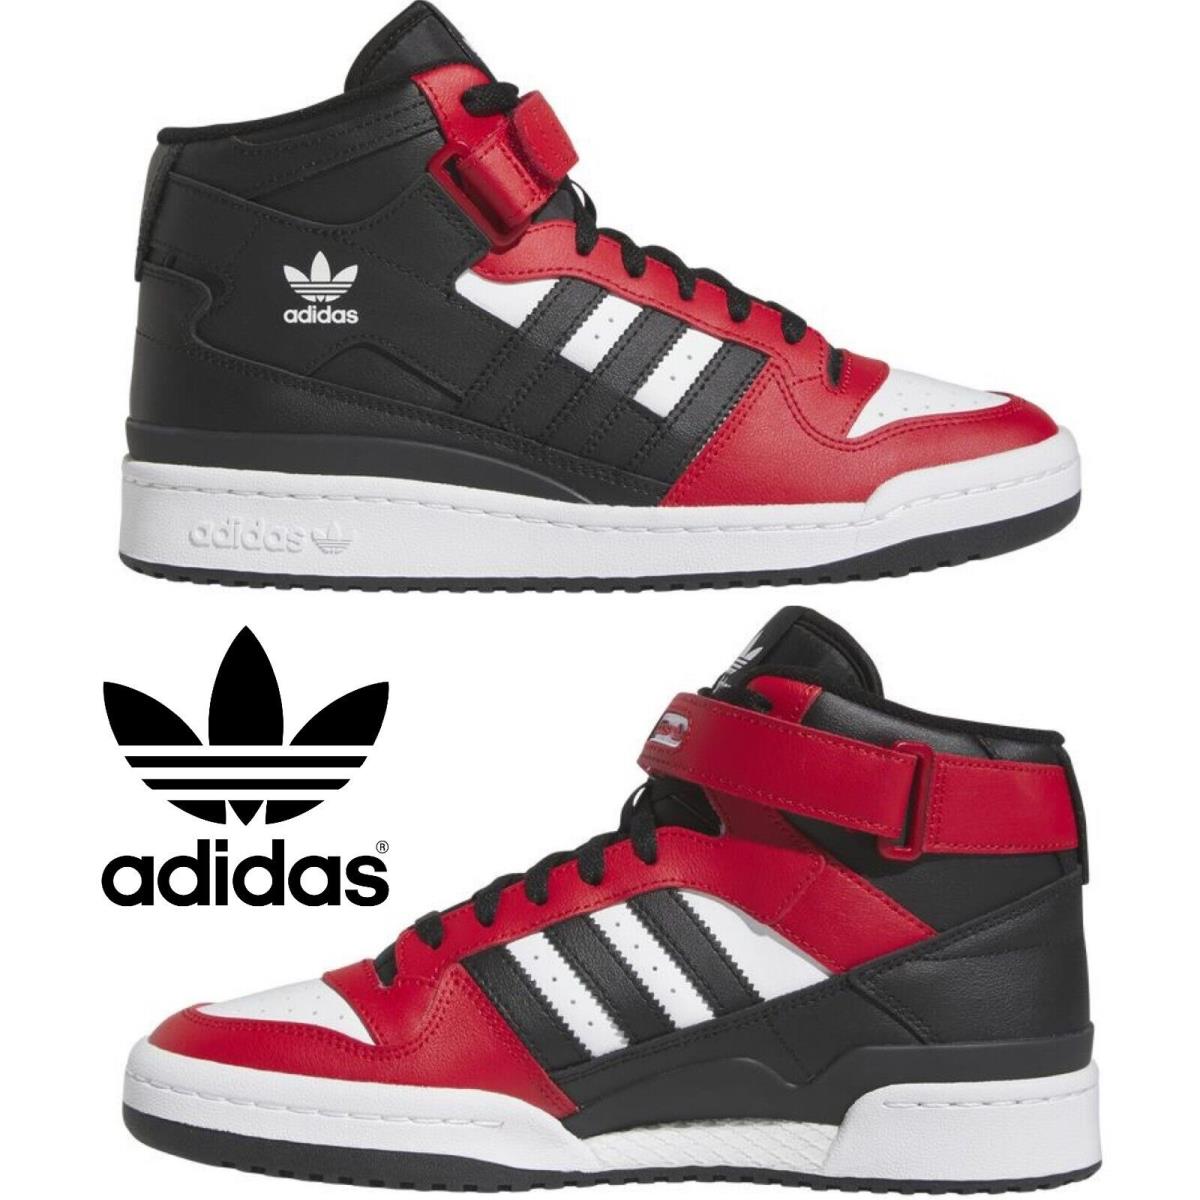 Adidas Originals Forum Mid Men`s Sneakers Comfort Casual Shoes Premium Black